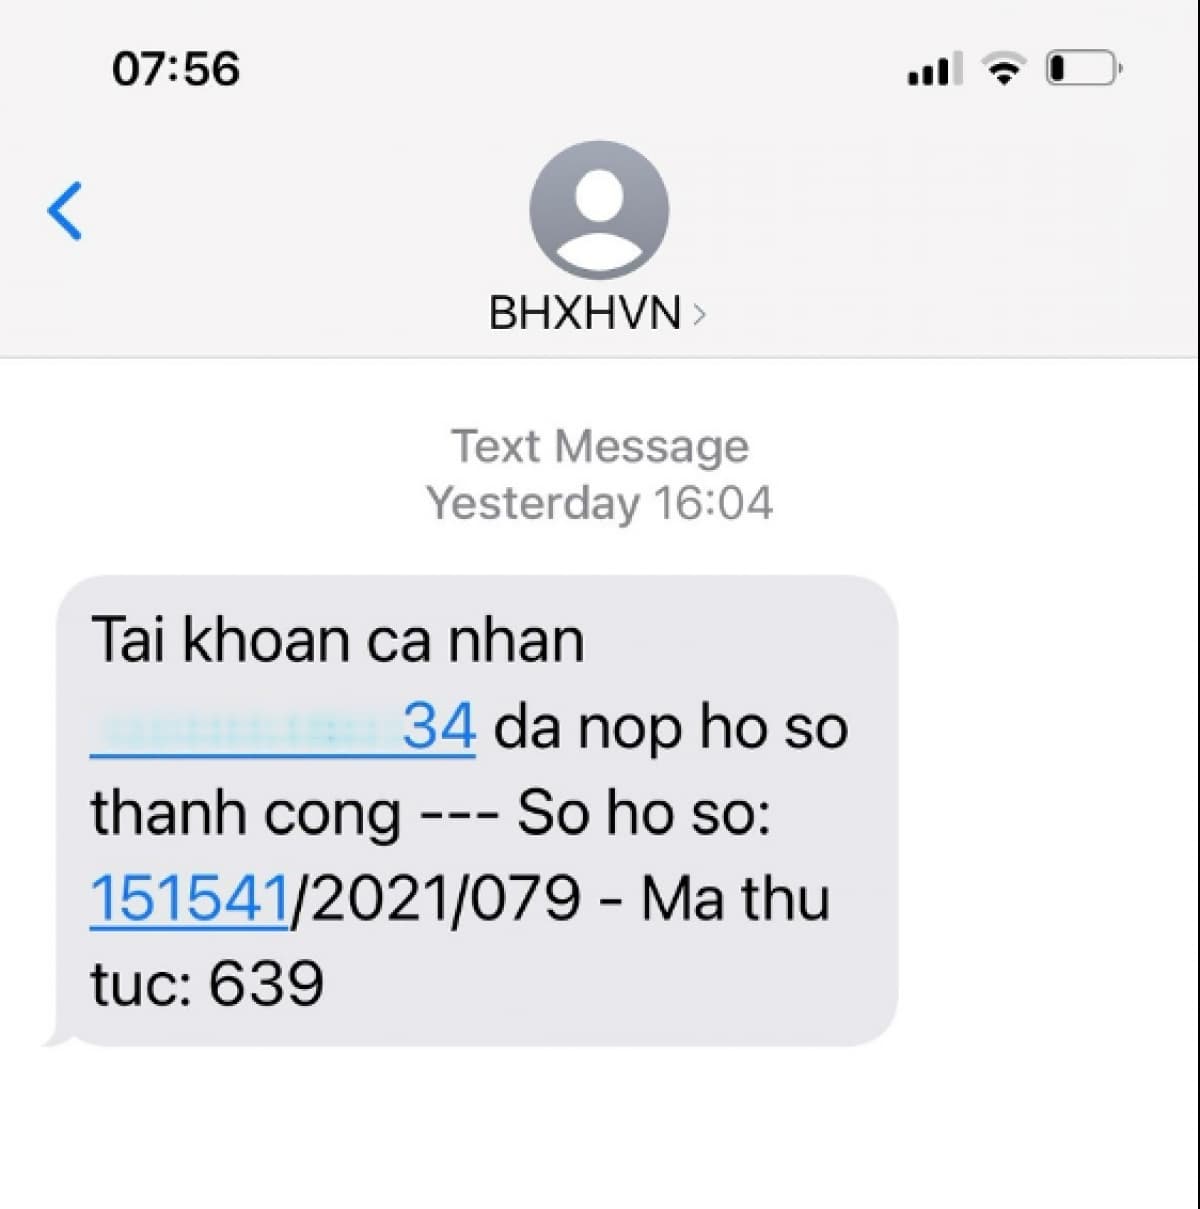 BHXH Việt Nam sẽ gửi tin nhắn đến điện thoại người dùng